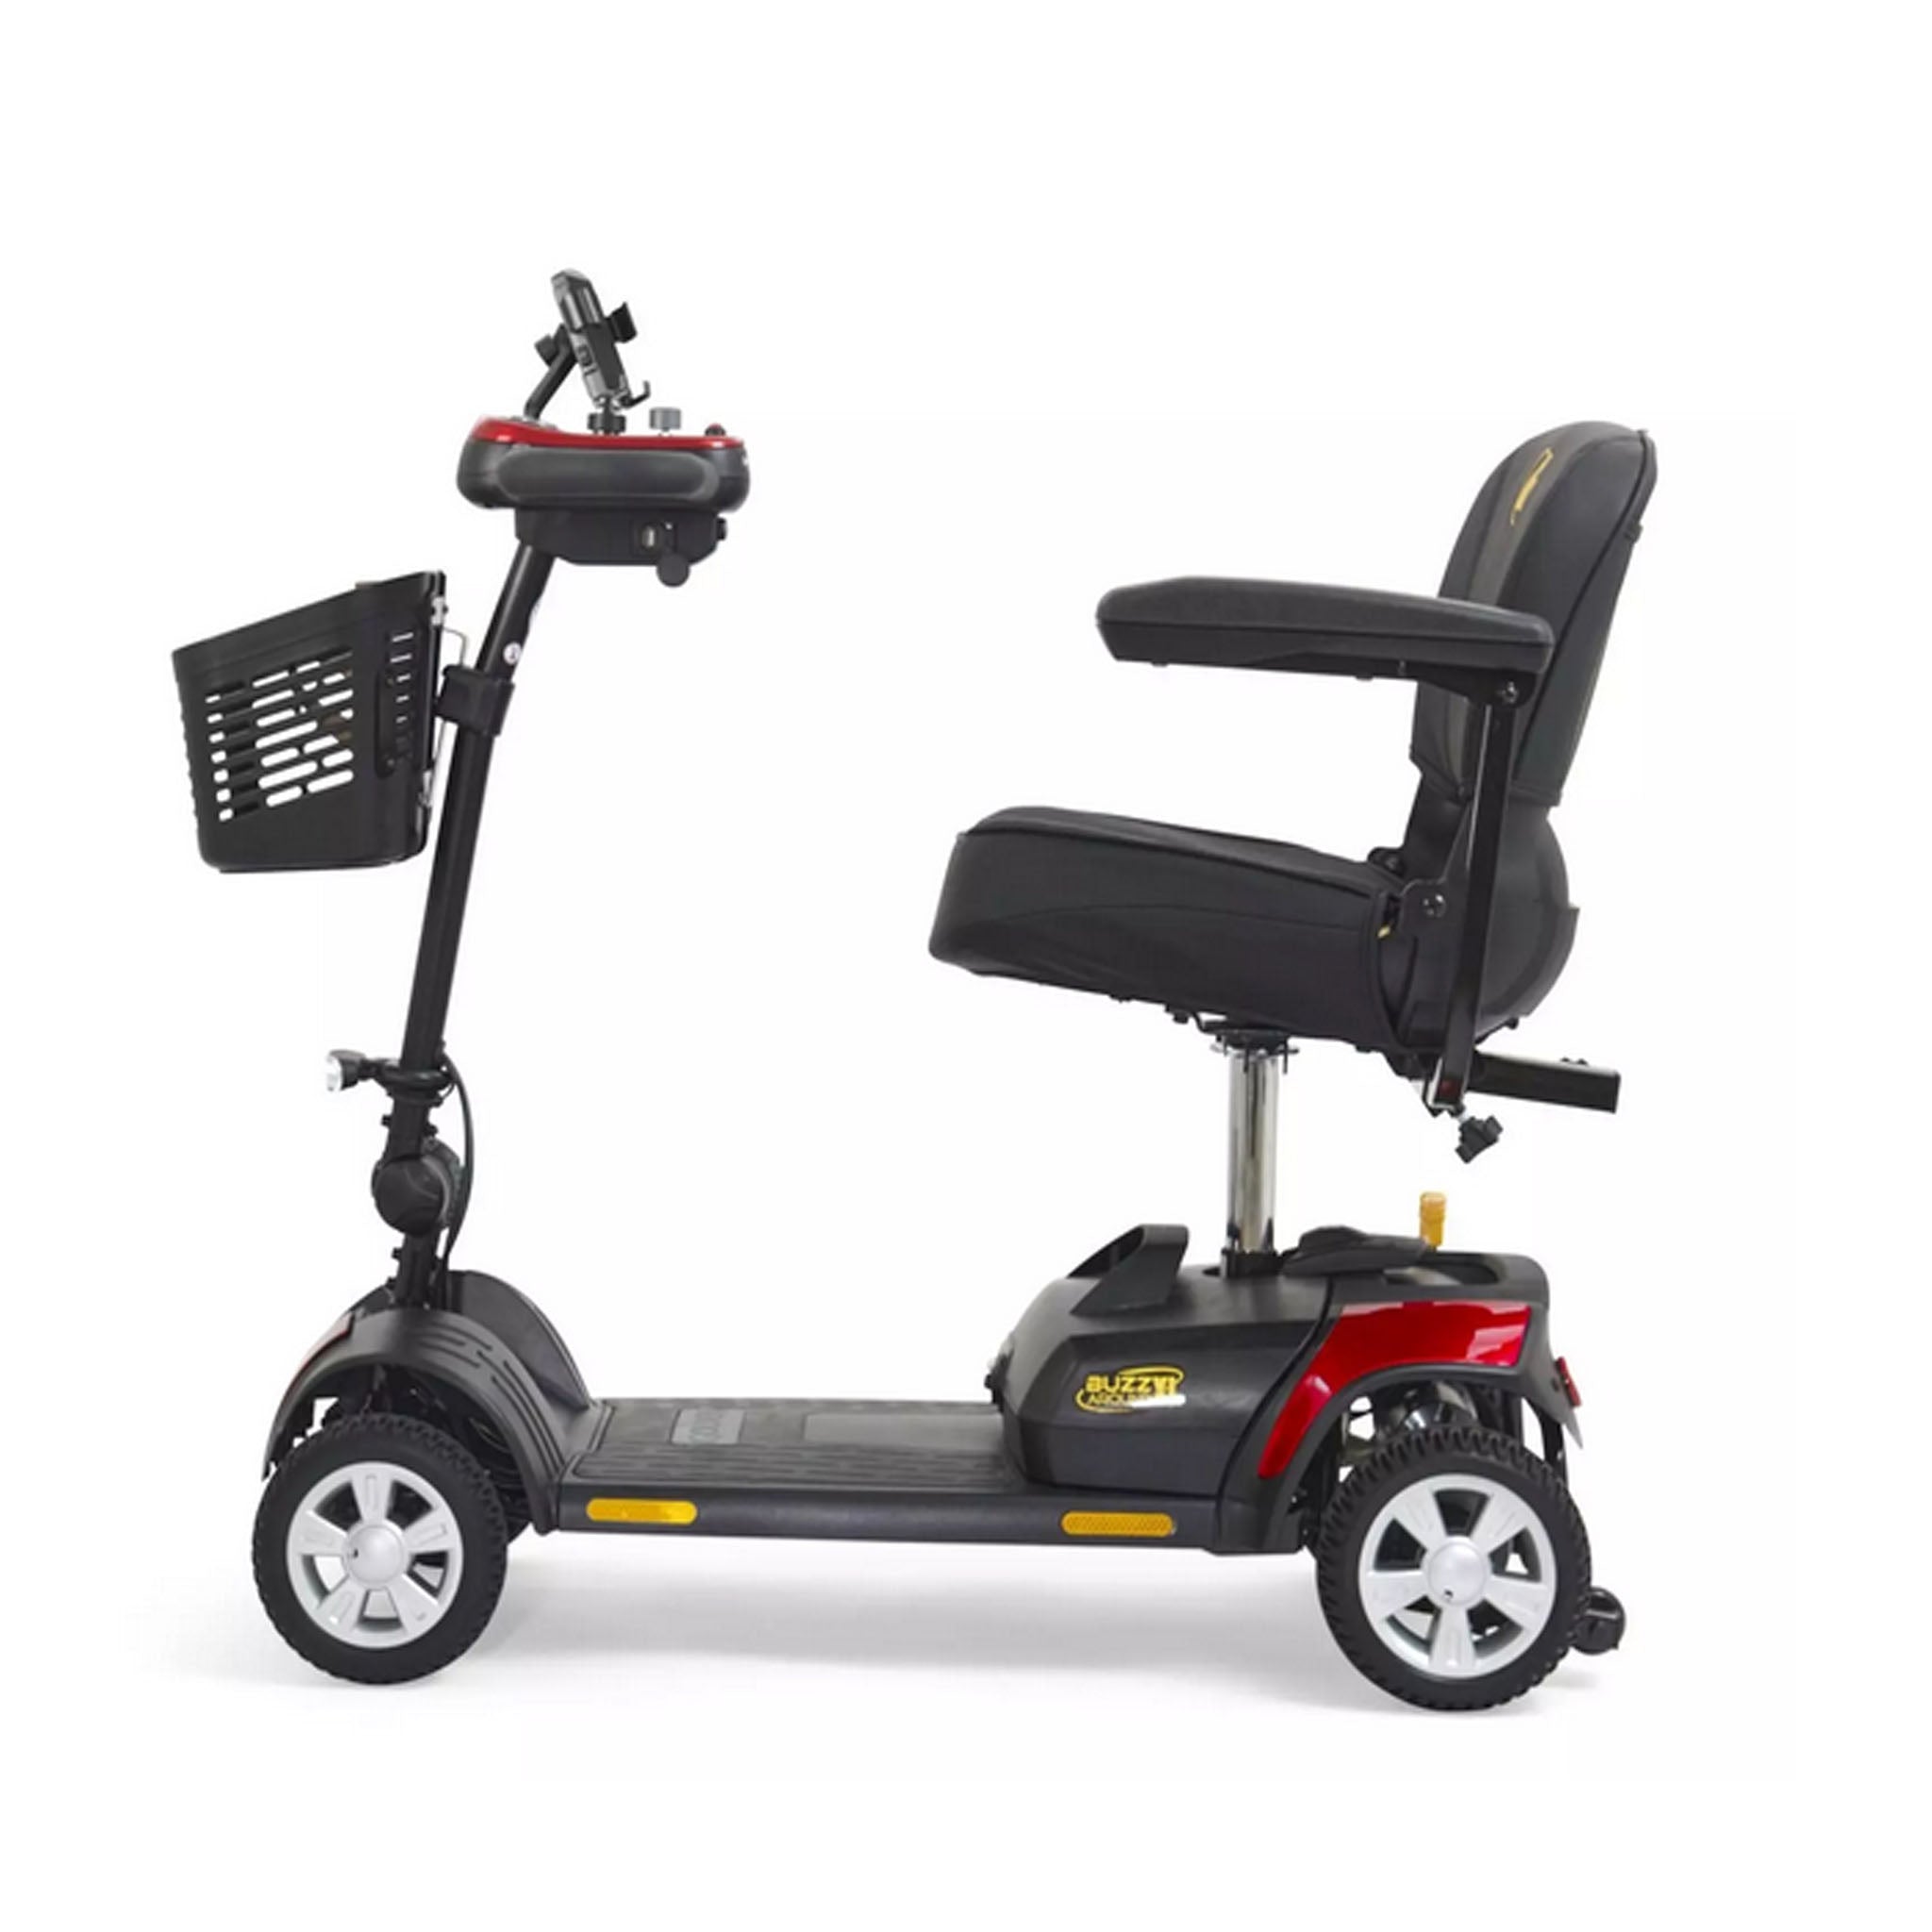 Golden Technologies Buzzaround XL 4 Wheel Scooter